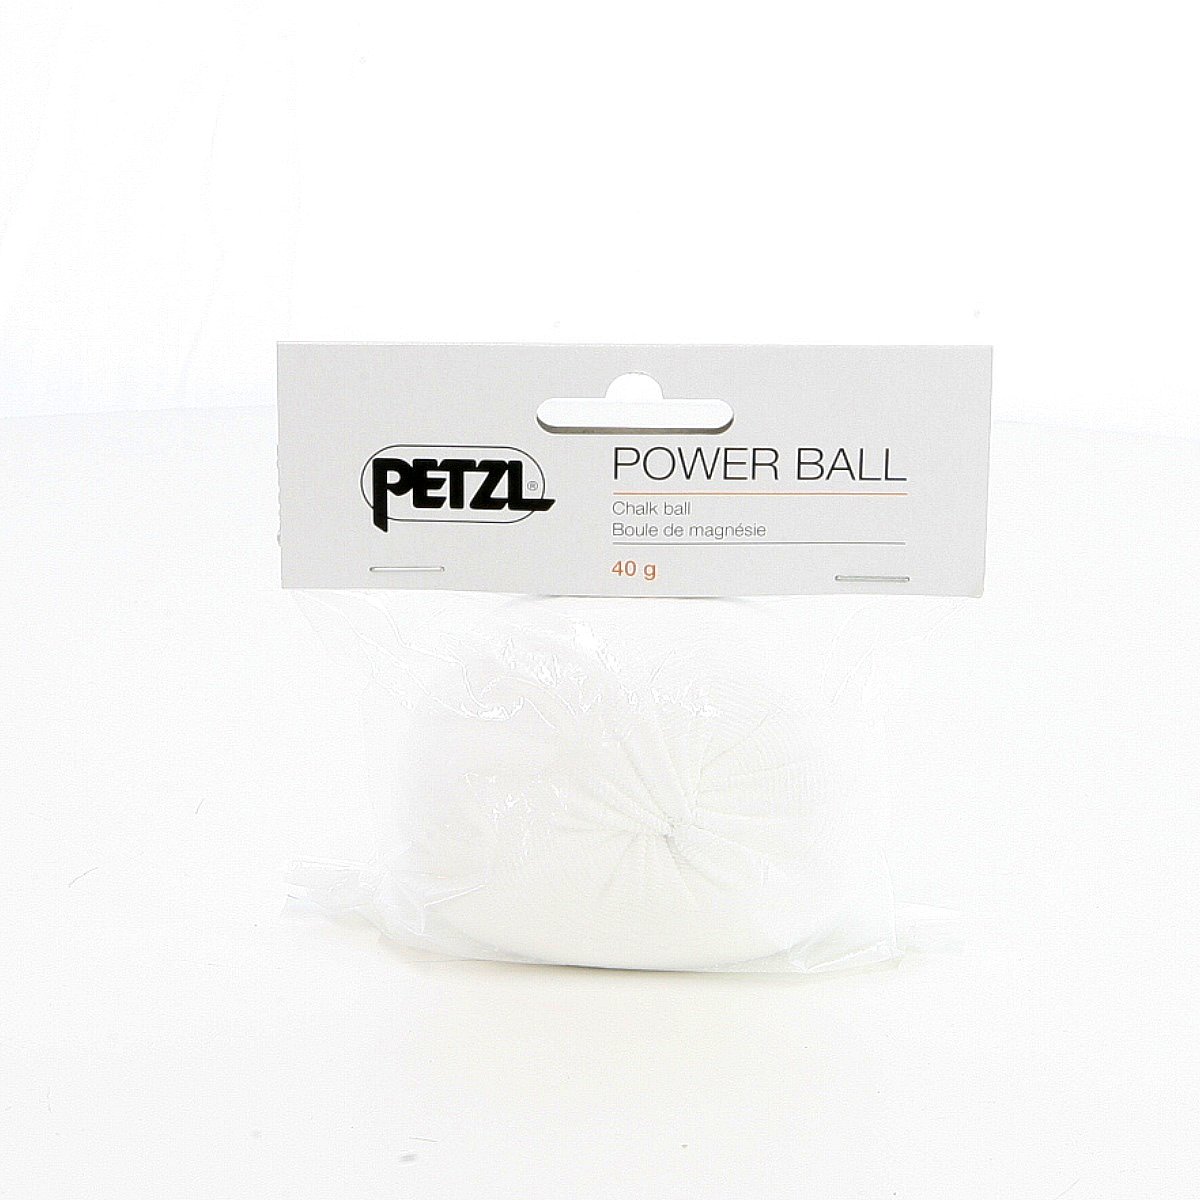 Petzl Power Ball 40g Chalk Ball 